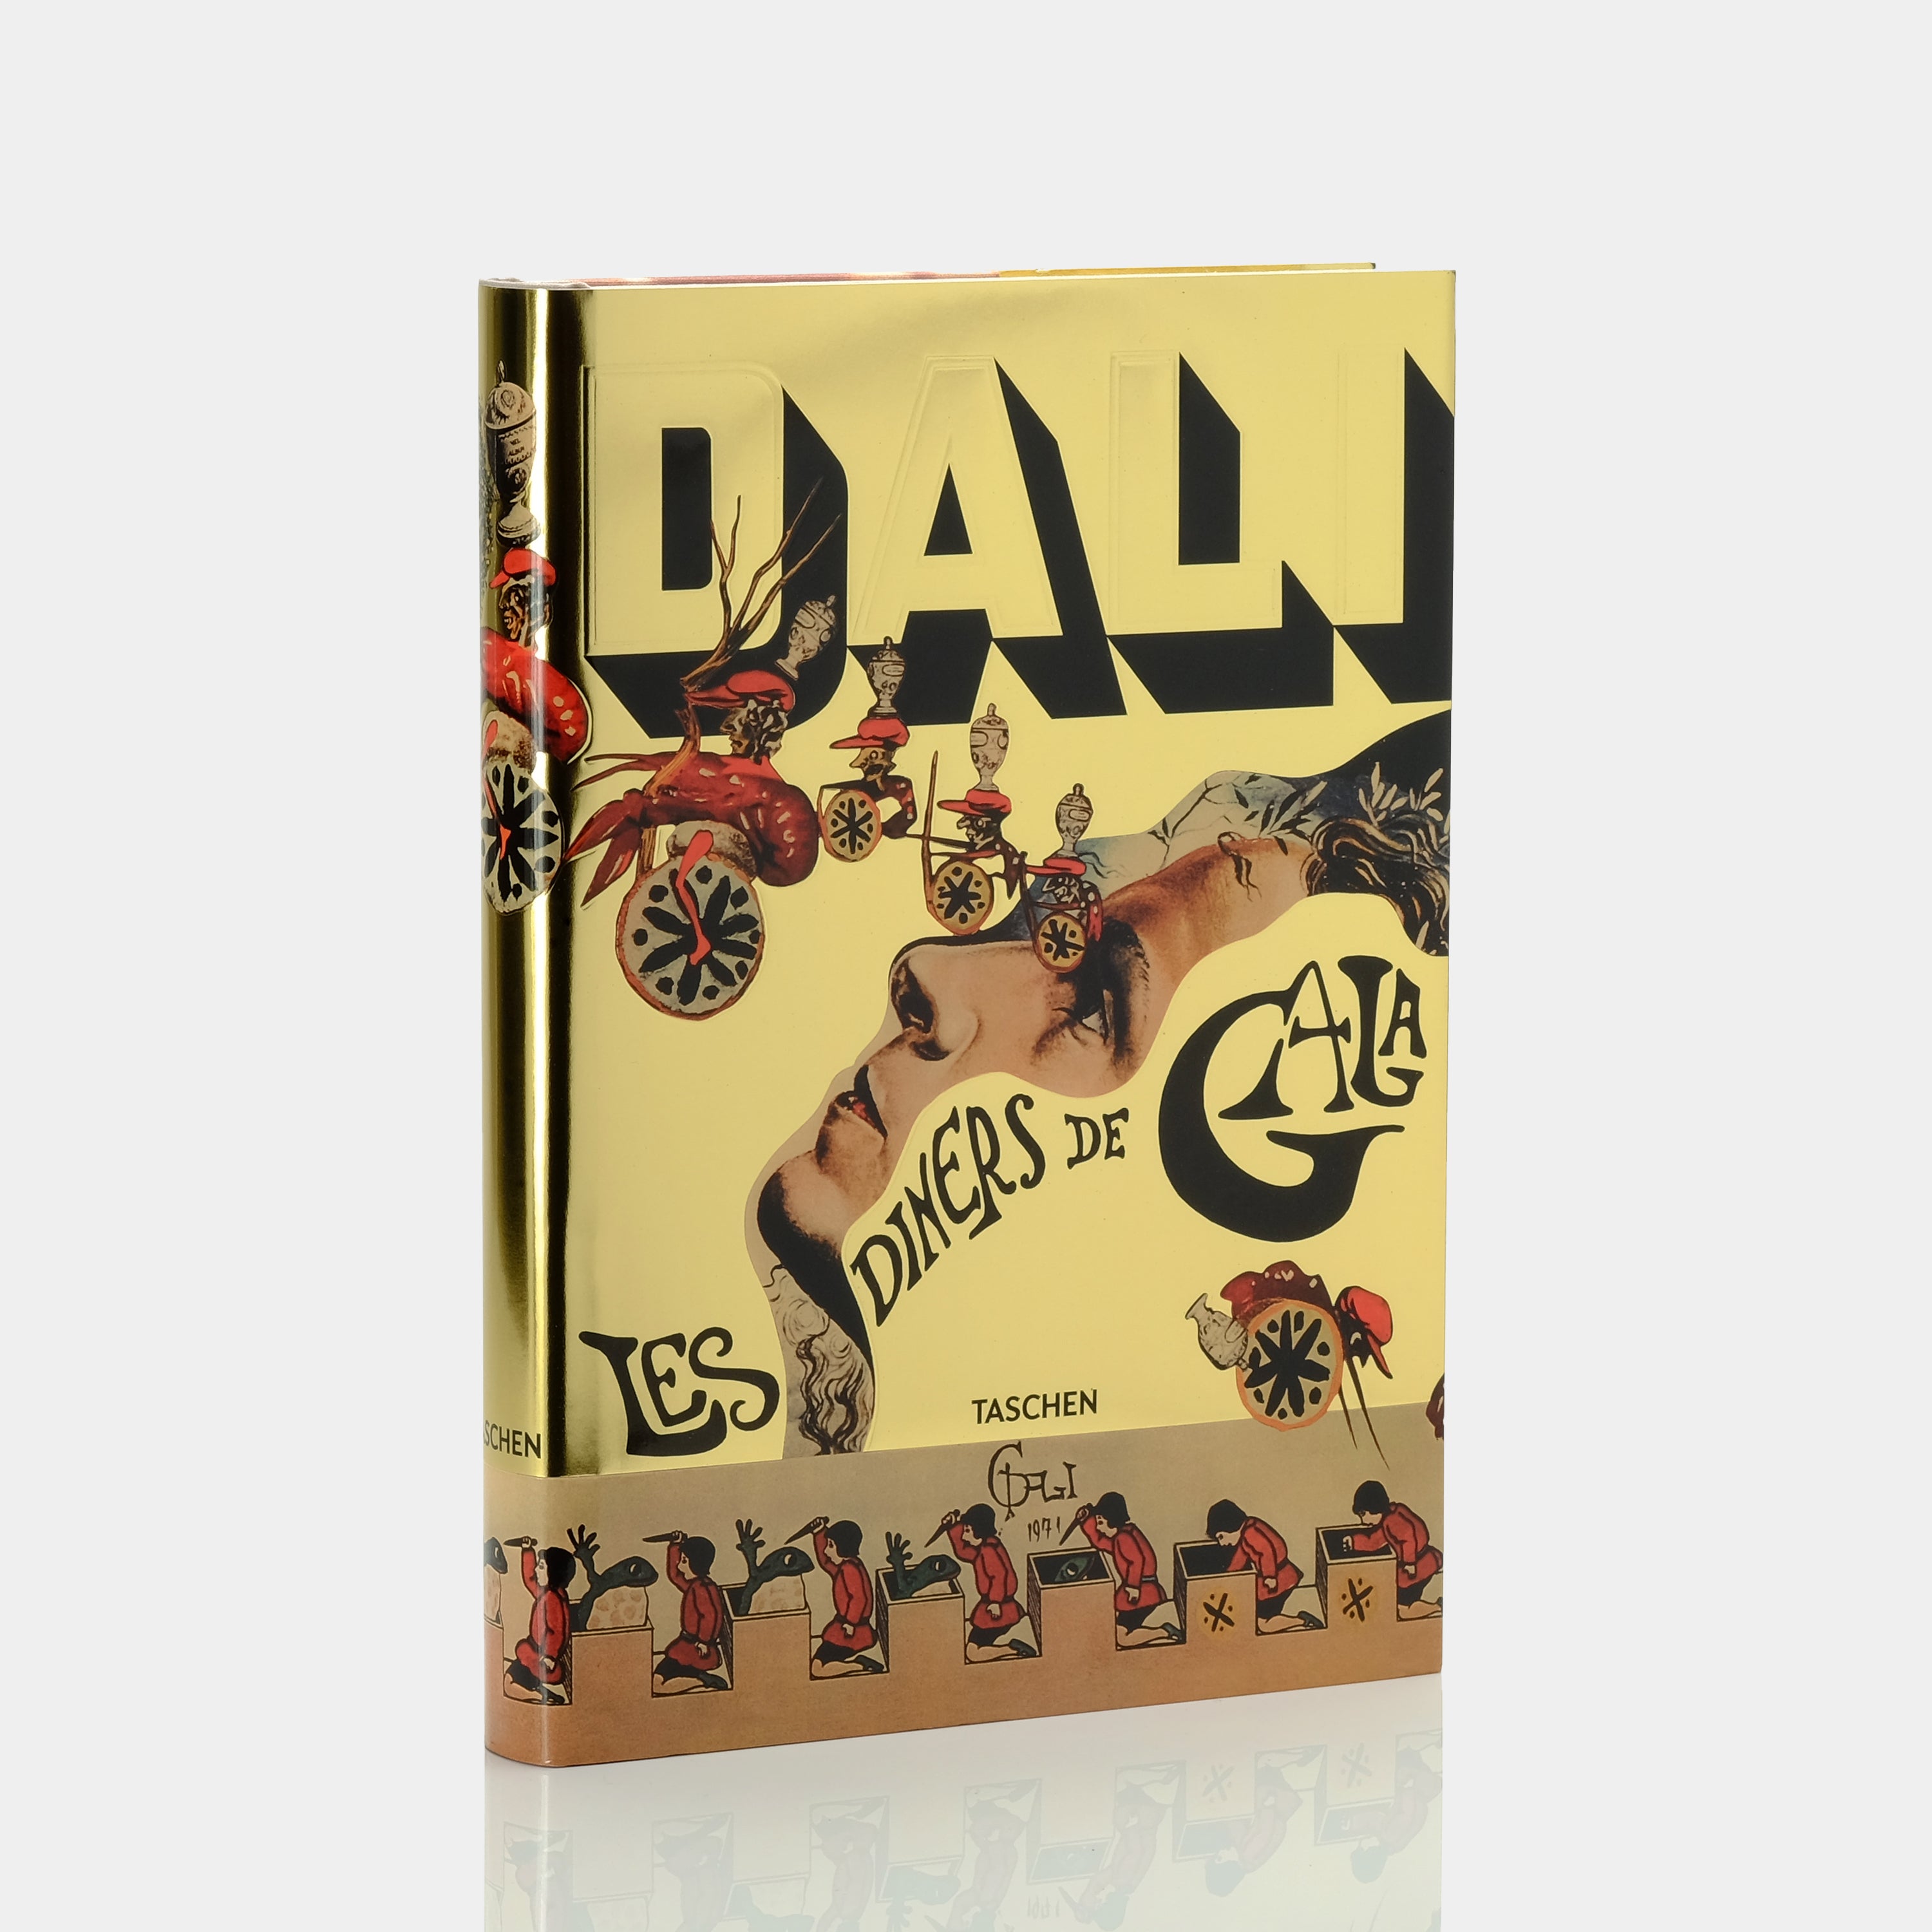 Dalí: Les diners de Gala Taschen Book